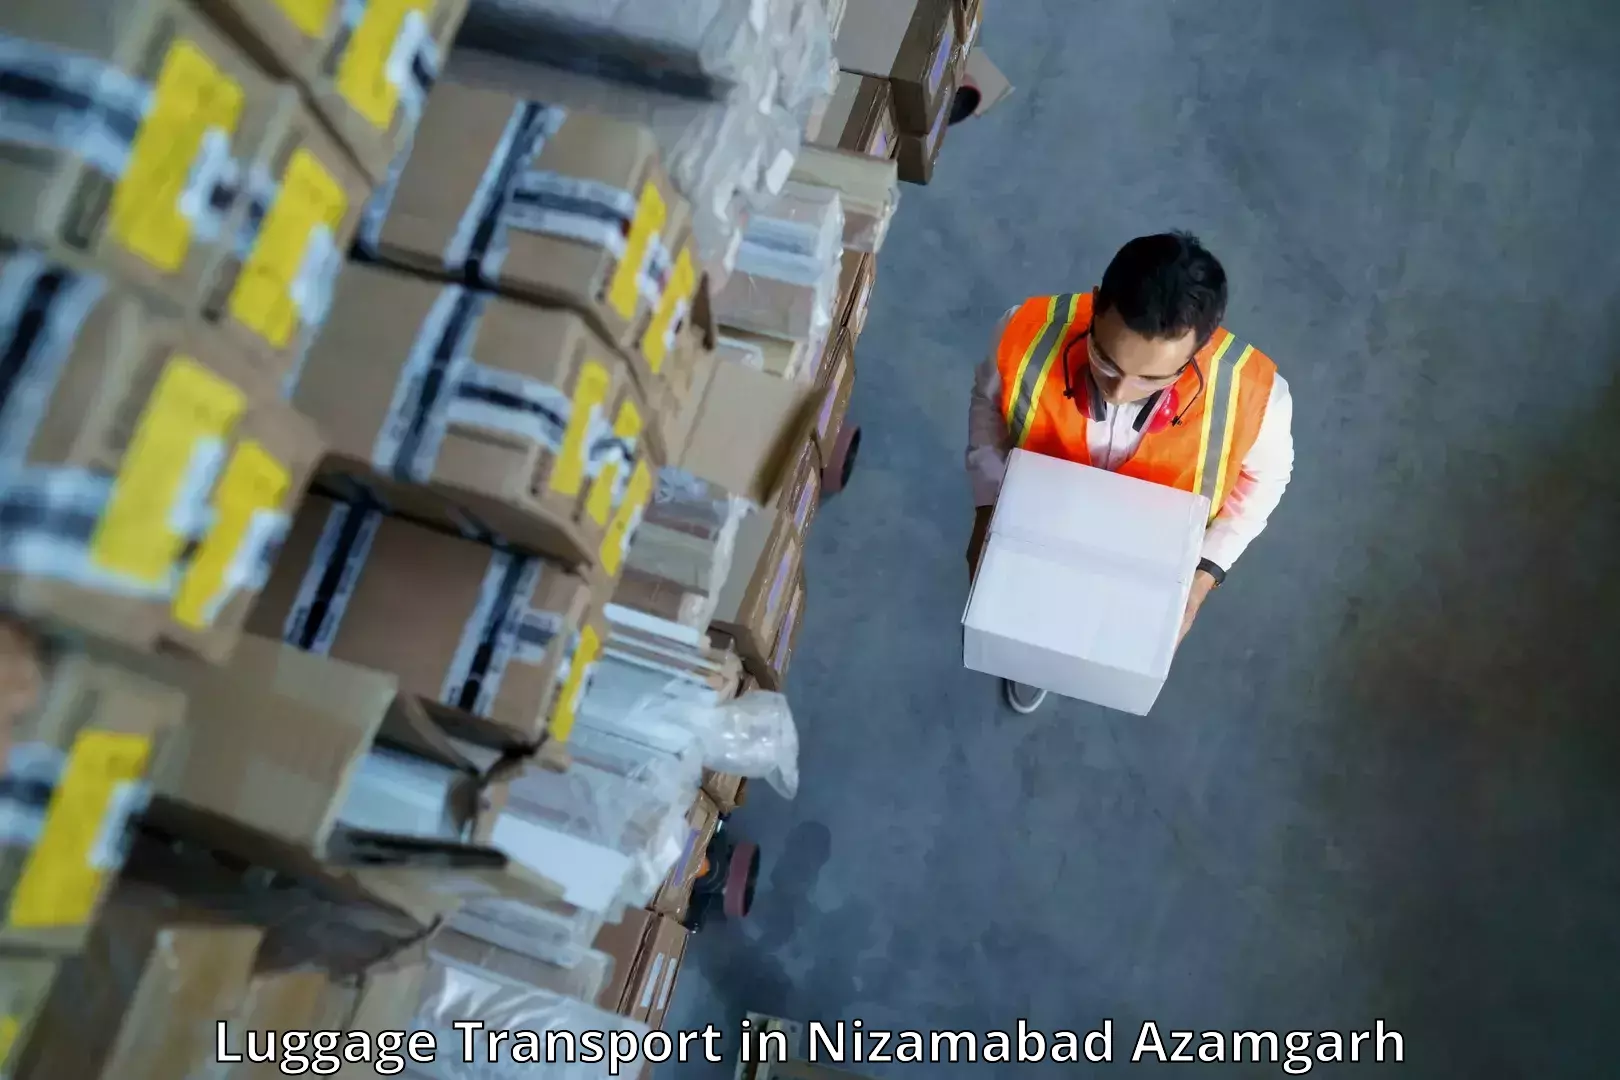 Luggage transport consulting in Nizamabad Azamgarh